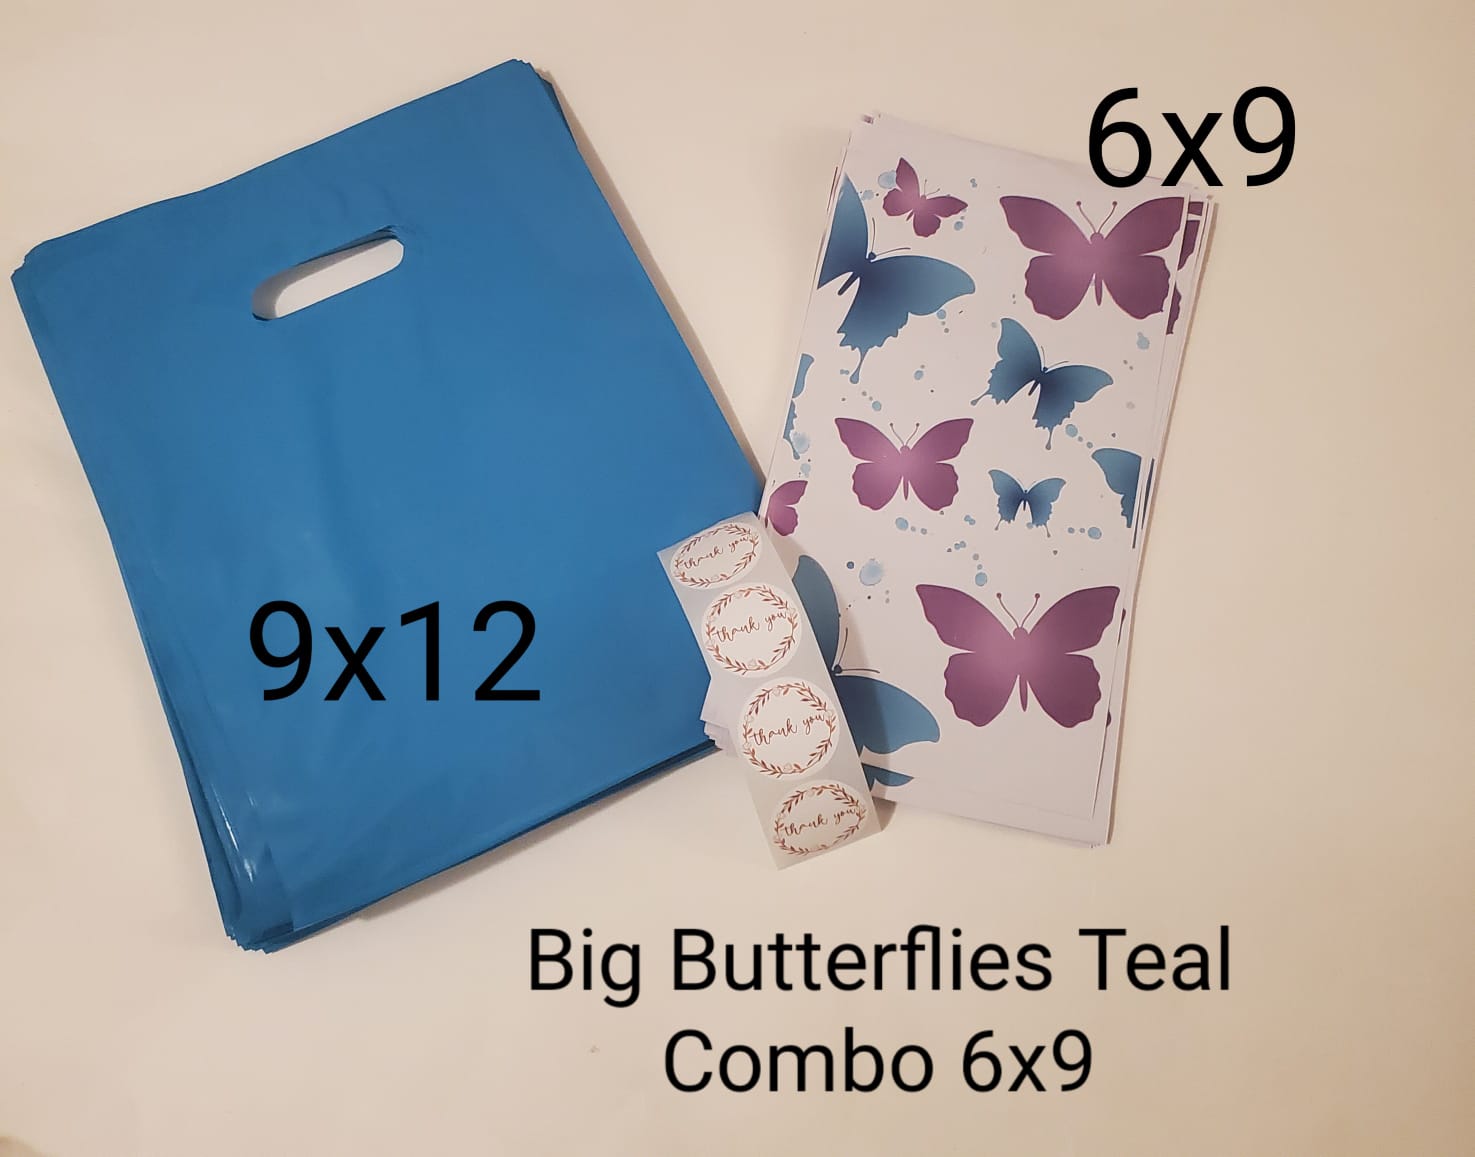 Big Butterflies Teal